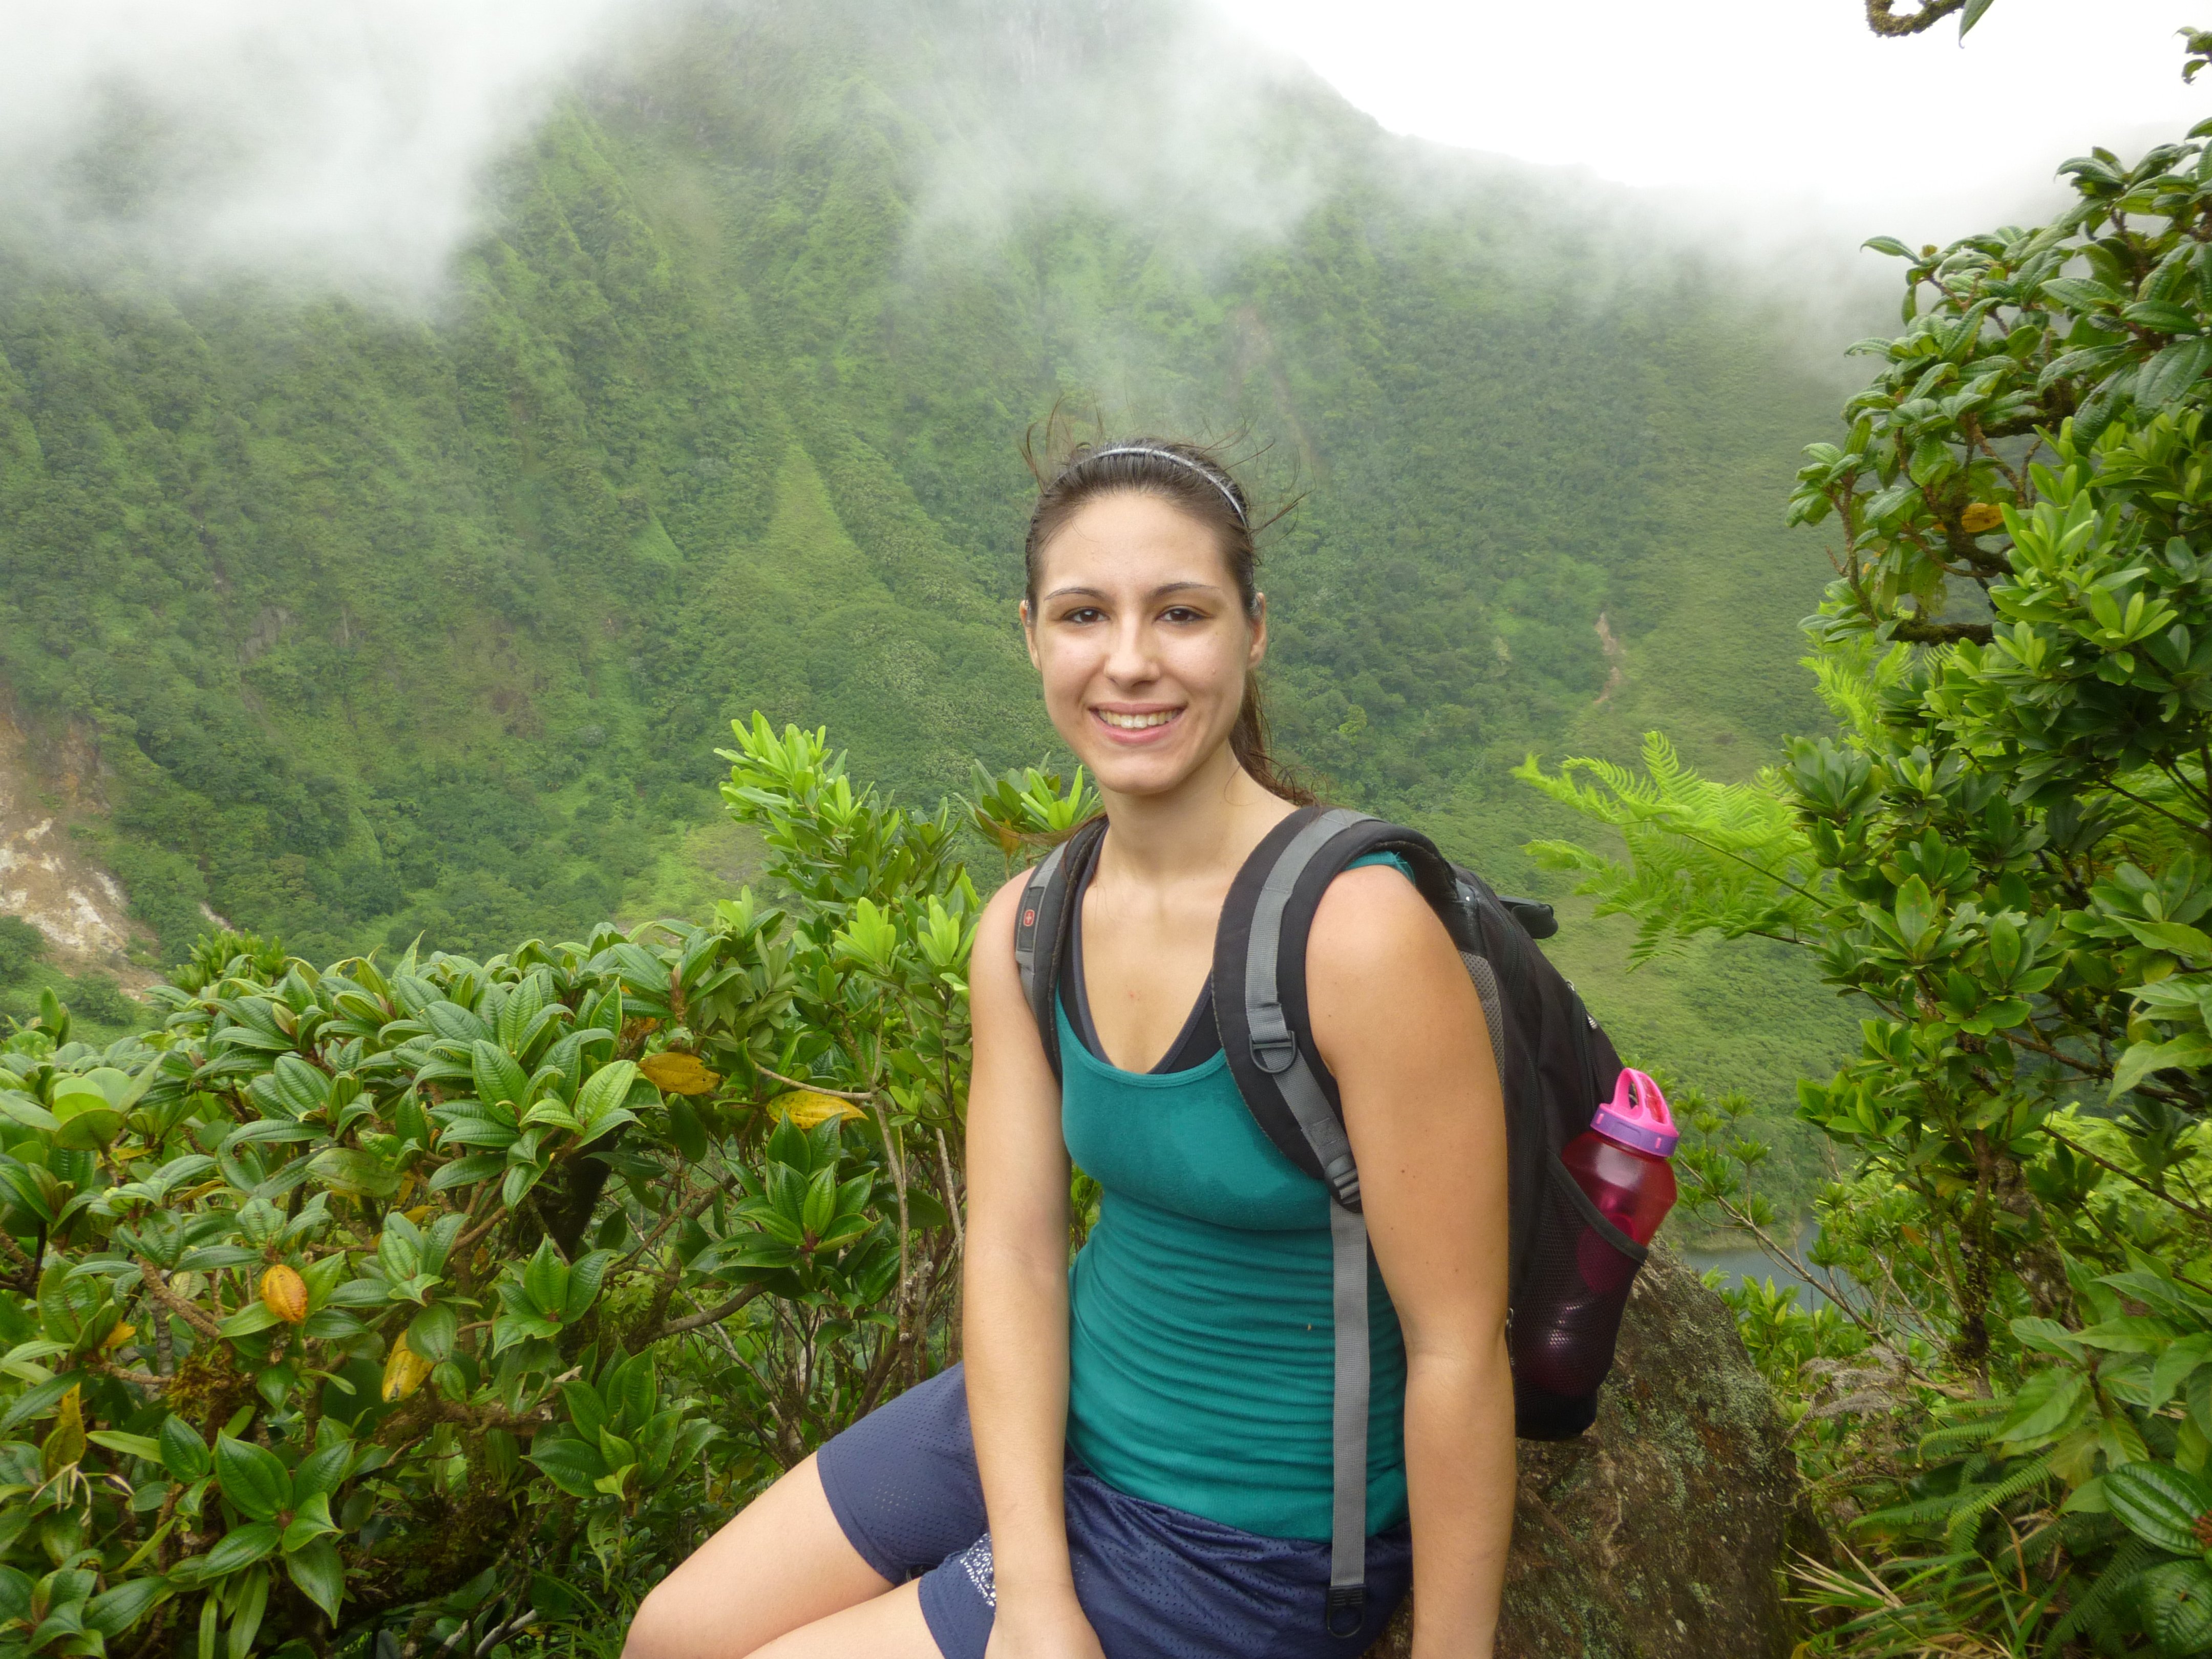 Dr Alvarez-Hiking St. Kitts 2013